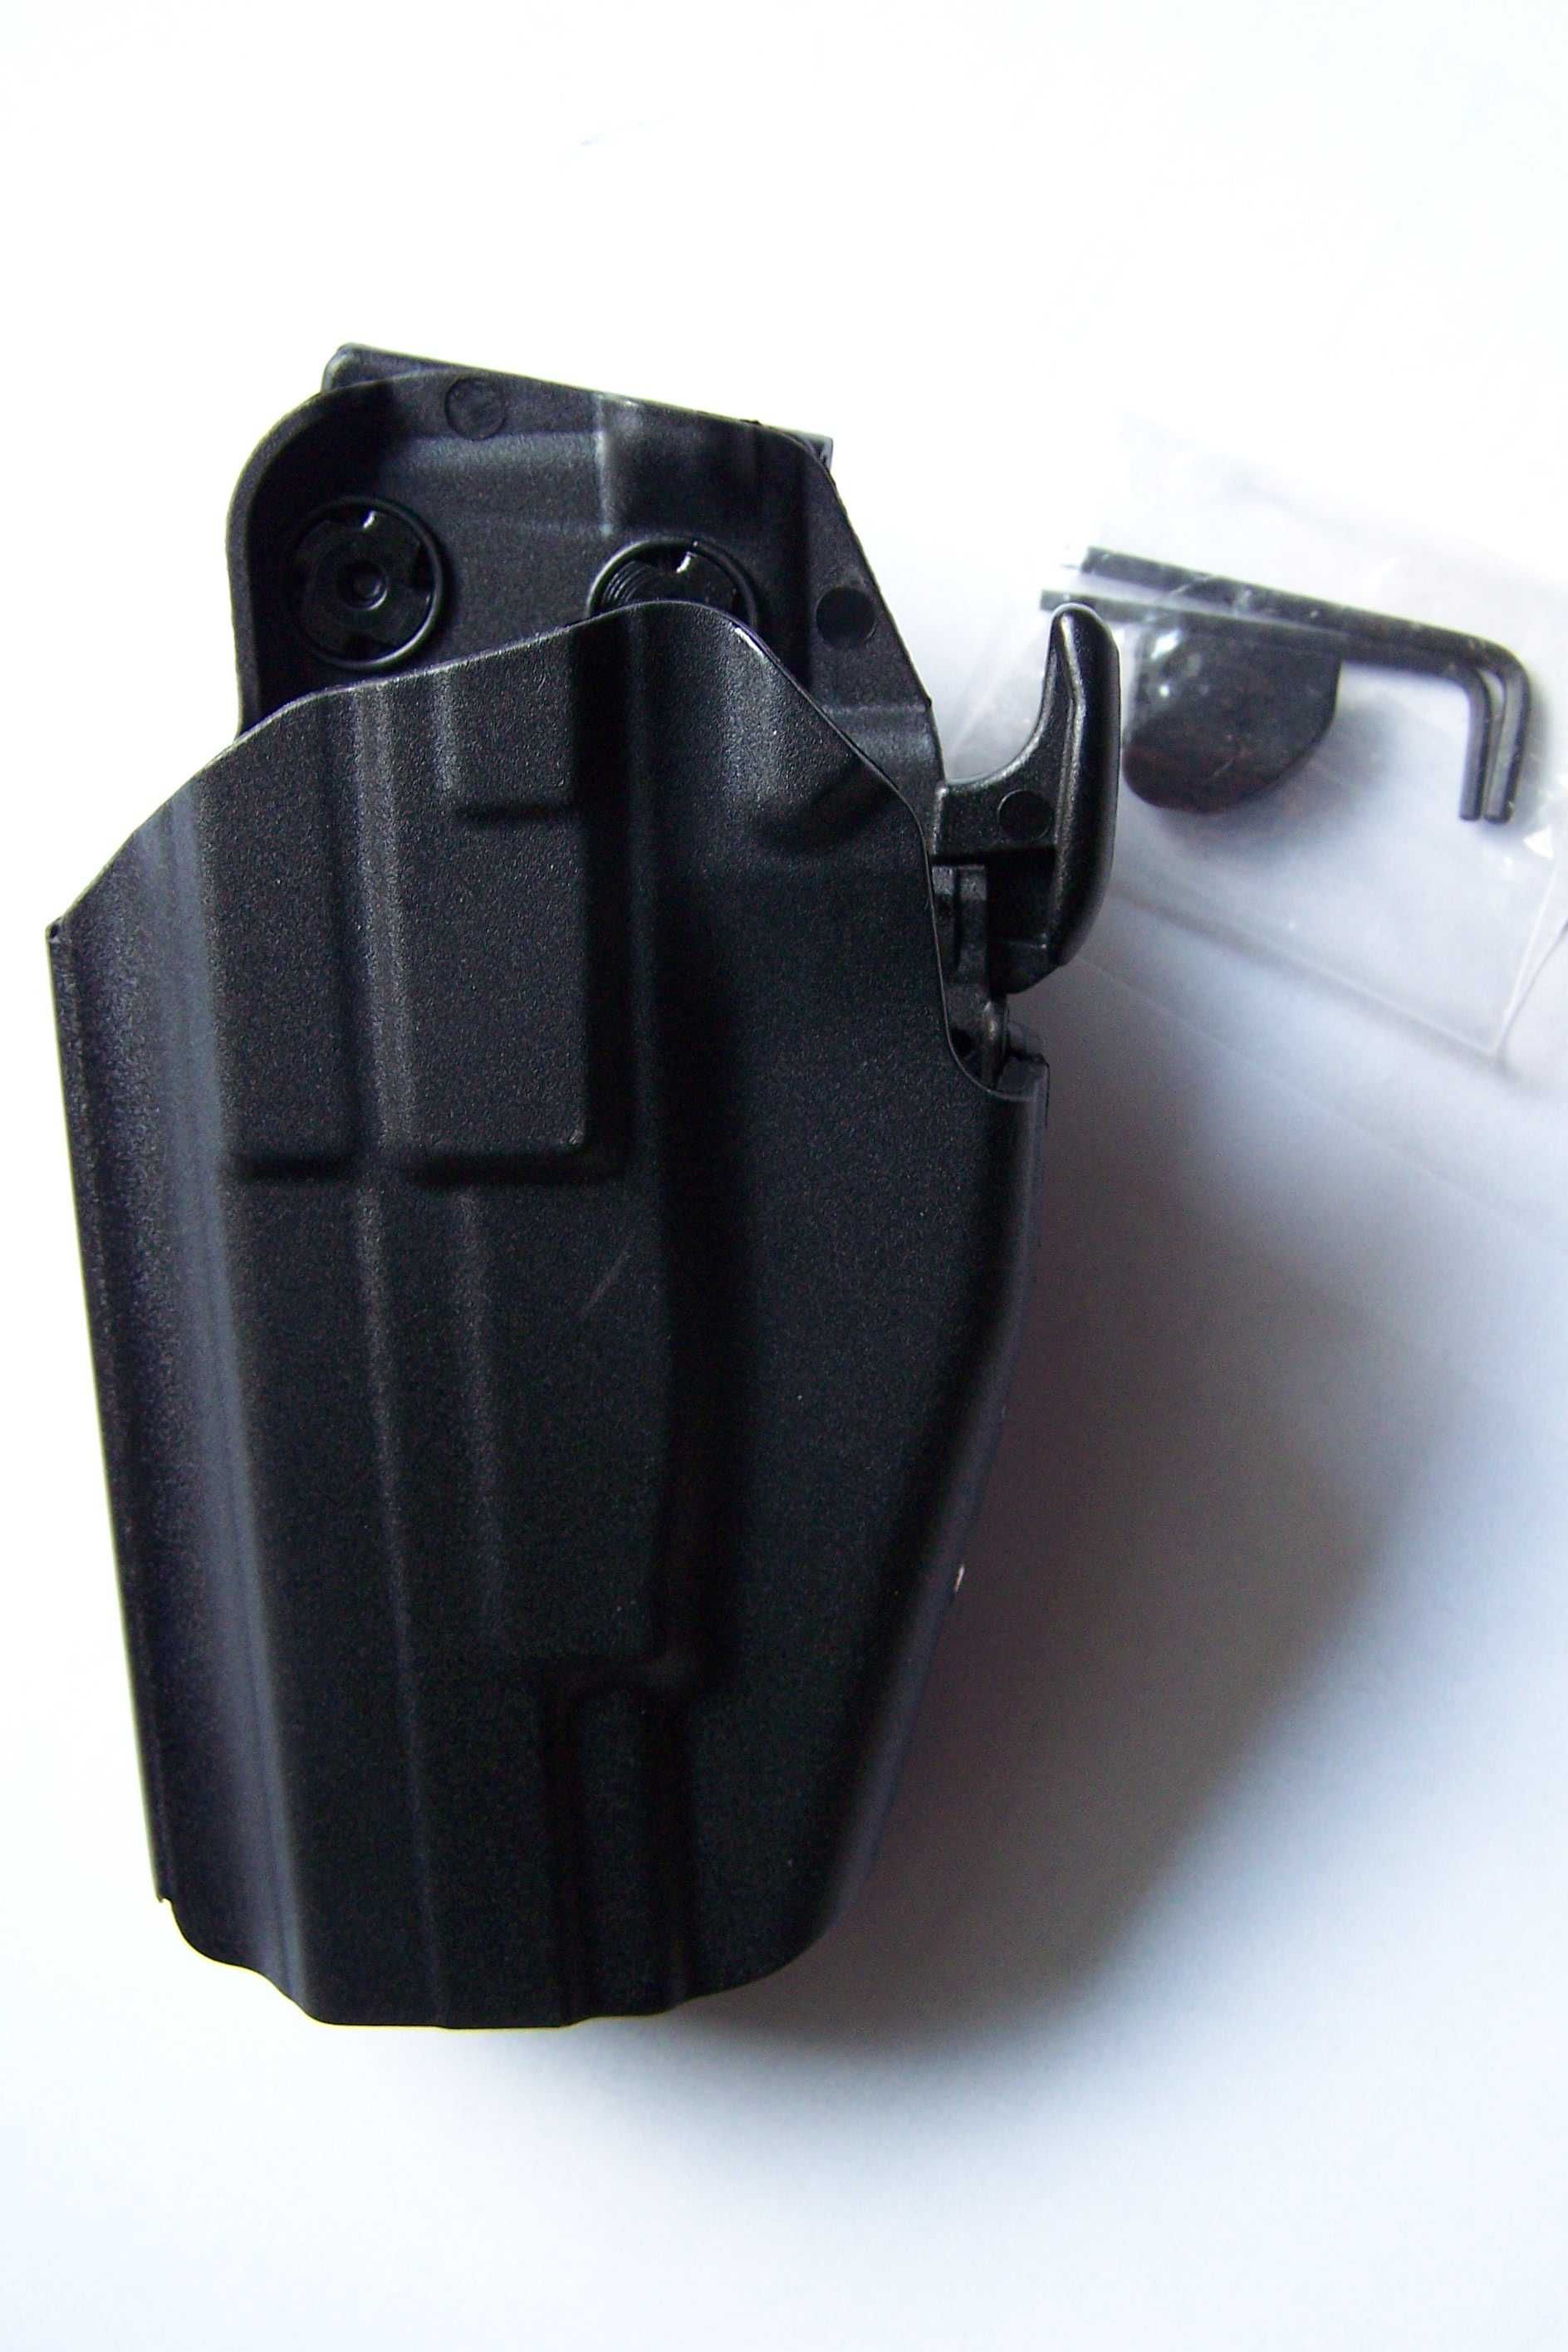 Kabura taktyczna dla leworęcznych do Glock, H&K, S&W  i innych